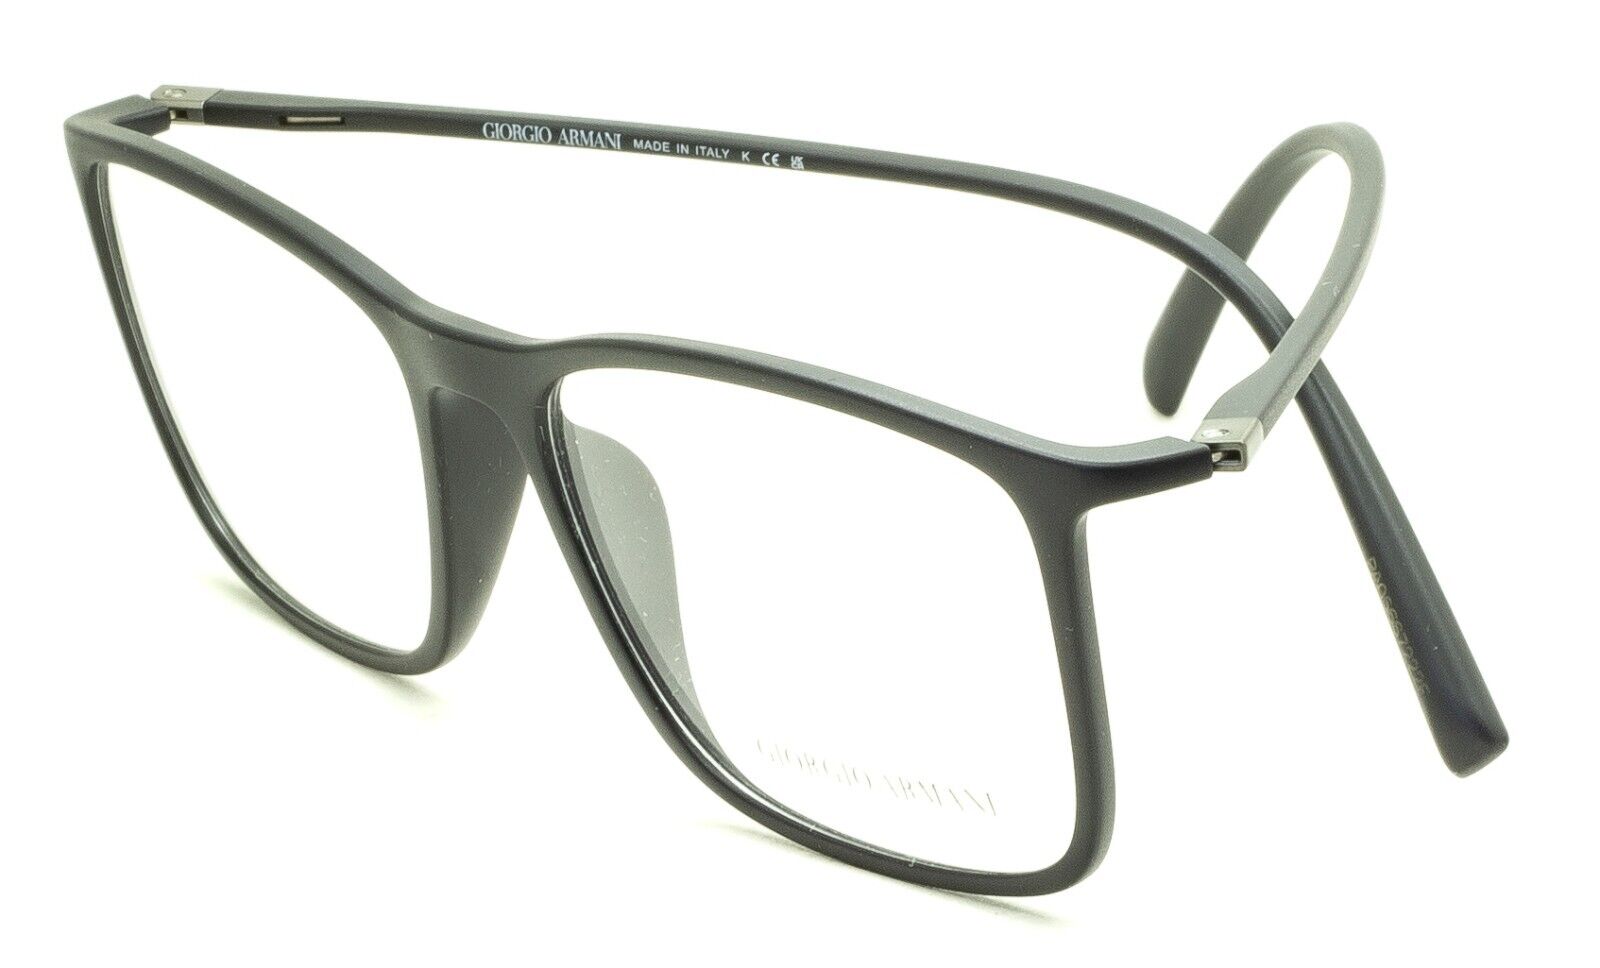 GIORGIO ARMANI GA 145 713 47mm Eyewear FRAMES Eyeglasses RX Optical Glasses  New - GGV Eyewear